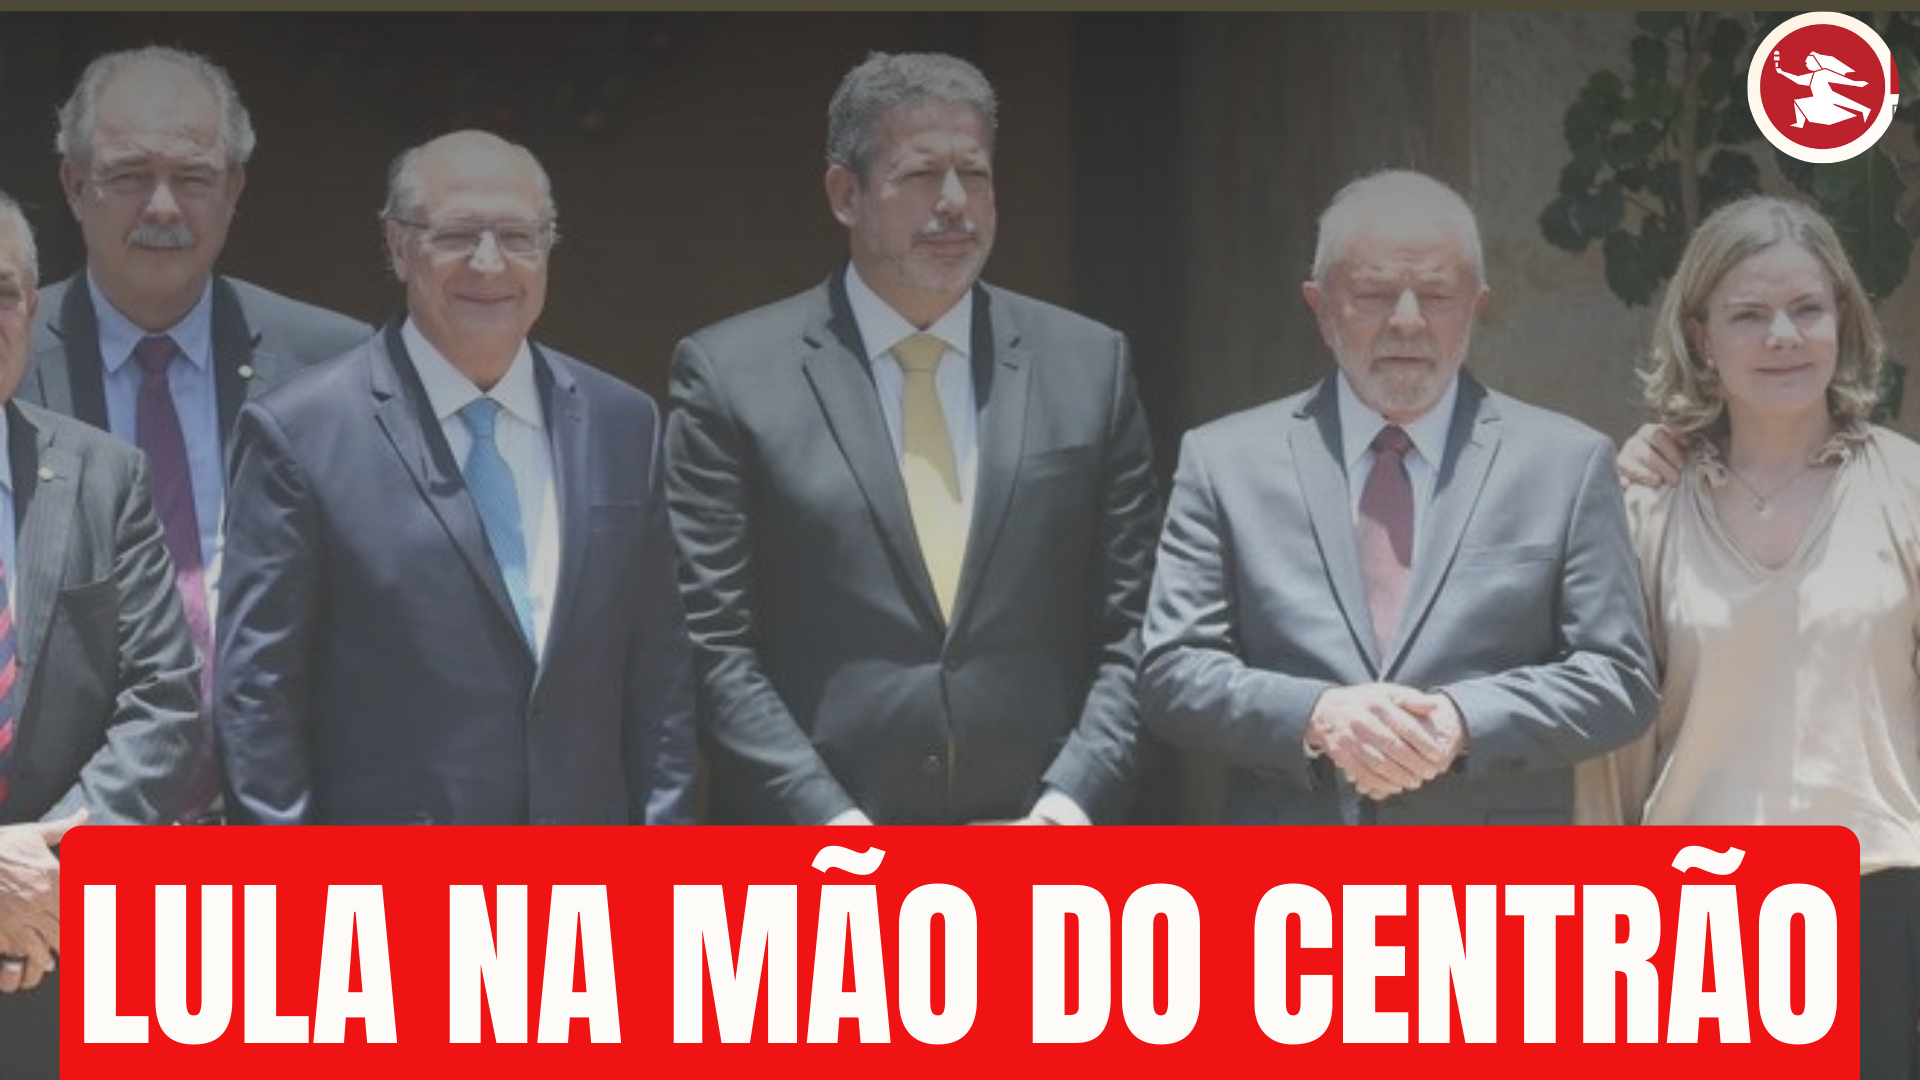 BRASÍLIA JÁ: Lula está totalmente nas mãos do Centrão